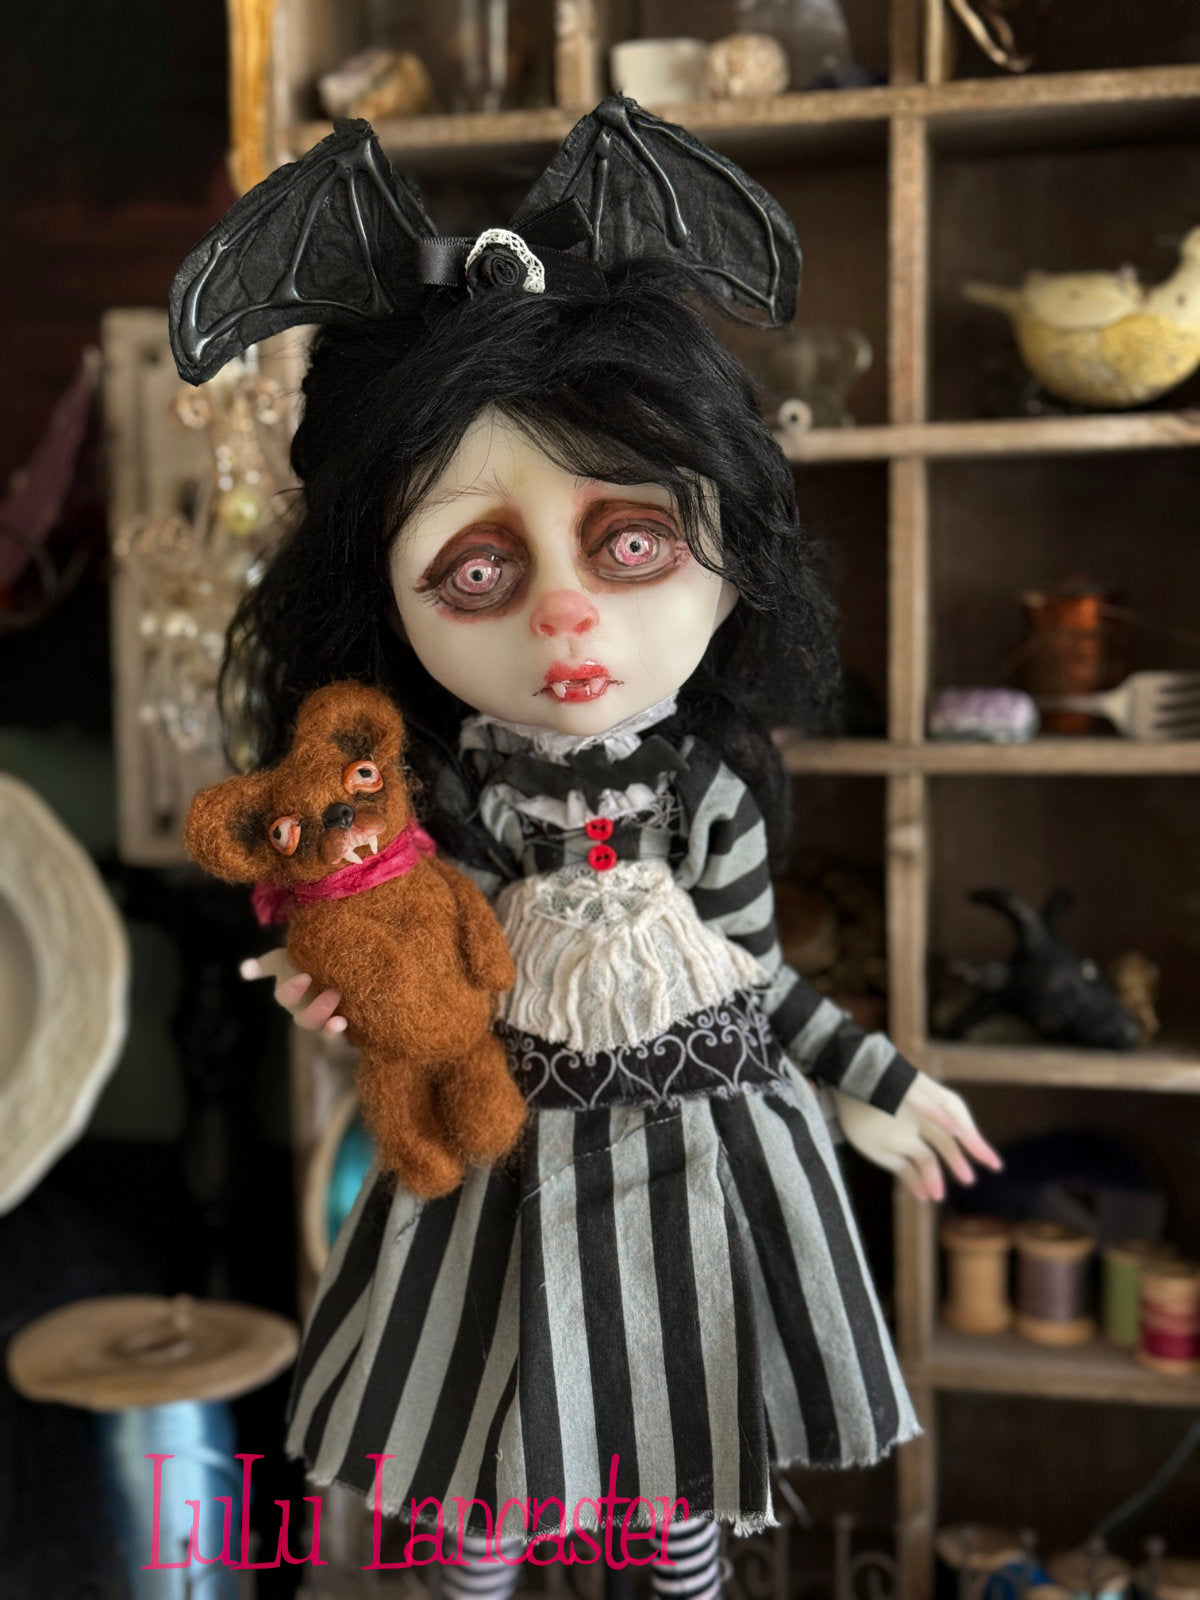 Dreary Darlene the Vampire Girl Original LuLu Lancaster Art Doll